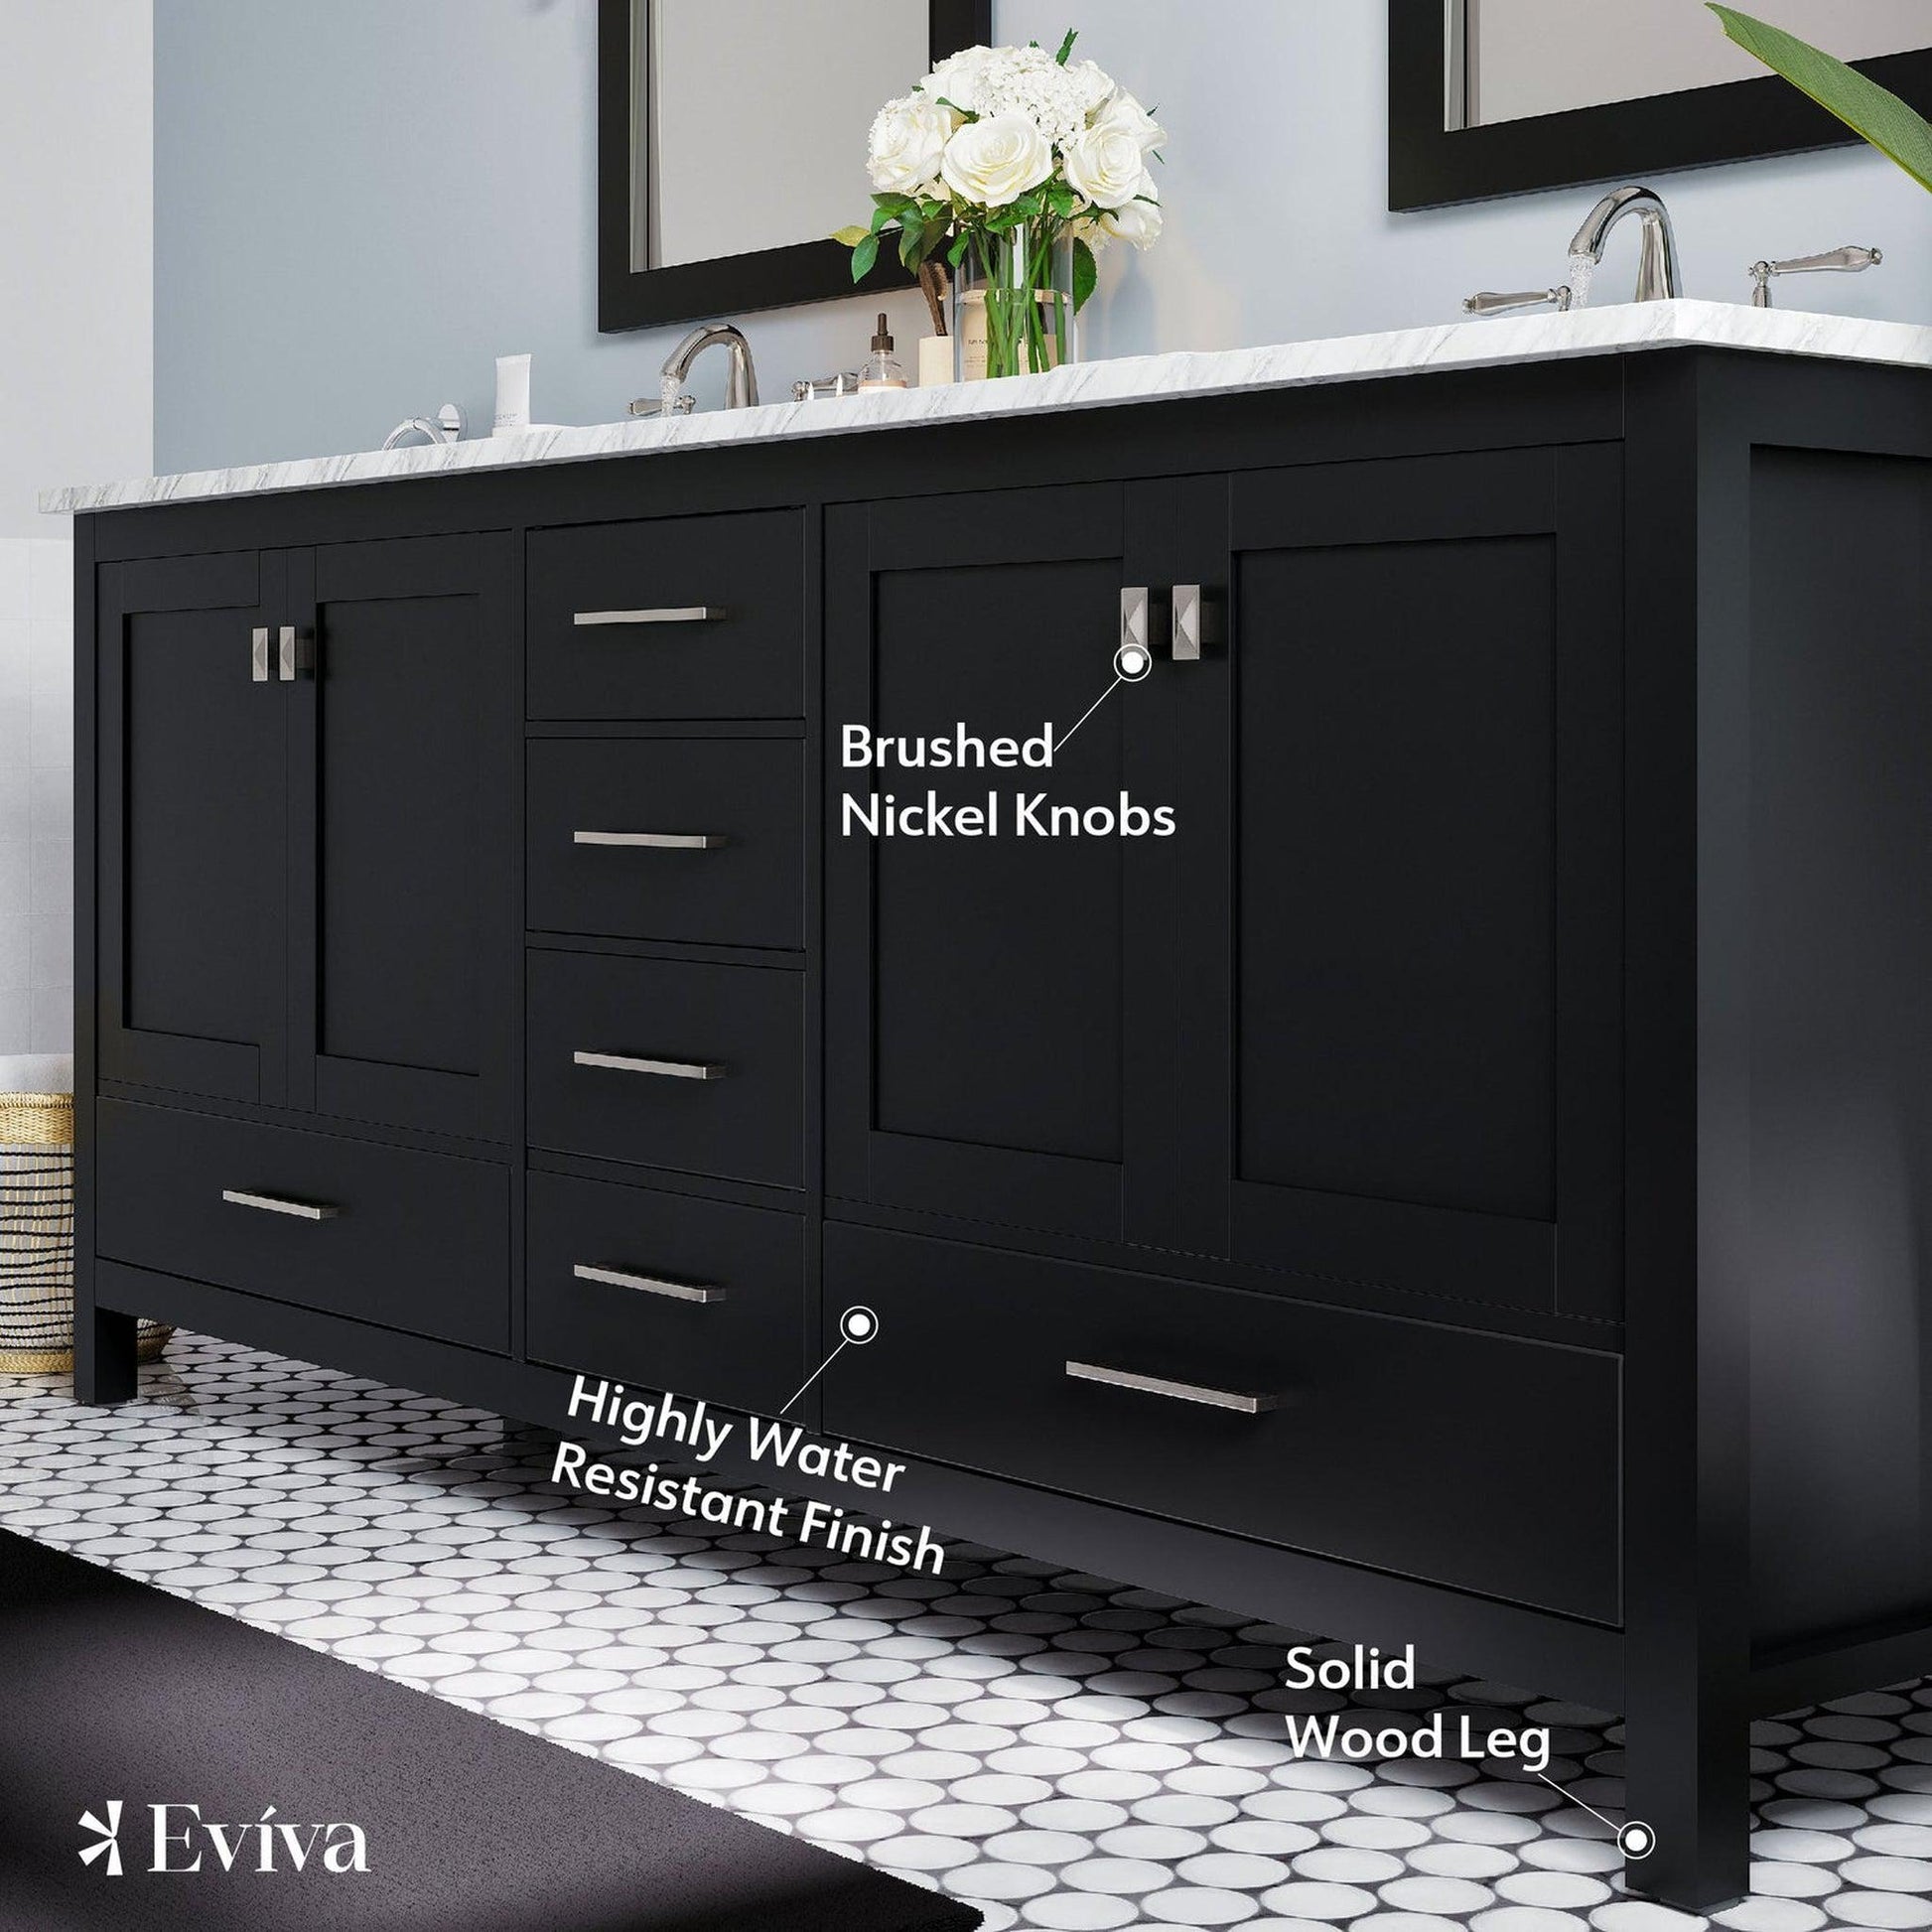 Eviva Aberdeen 84" x 34" Espresso Freestanding Bathroom Vanity With Double Undermount Sink